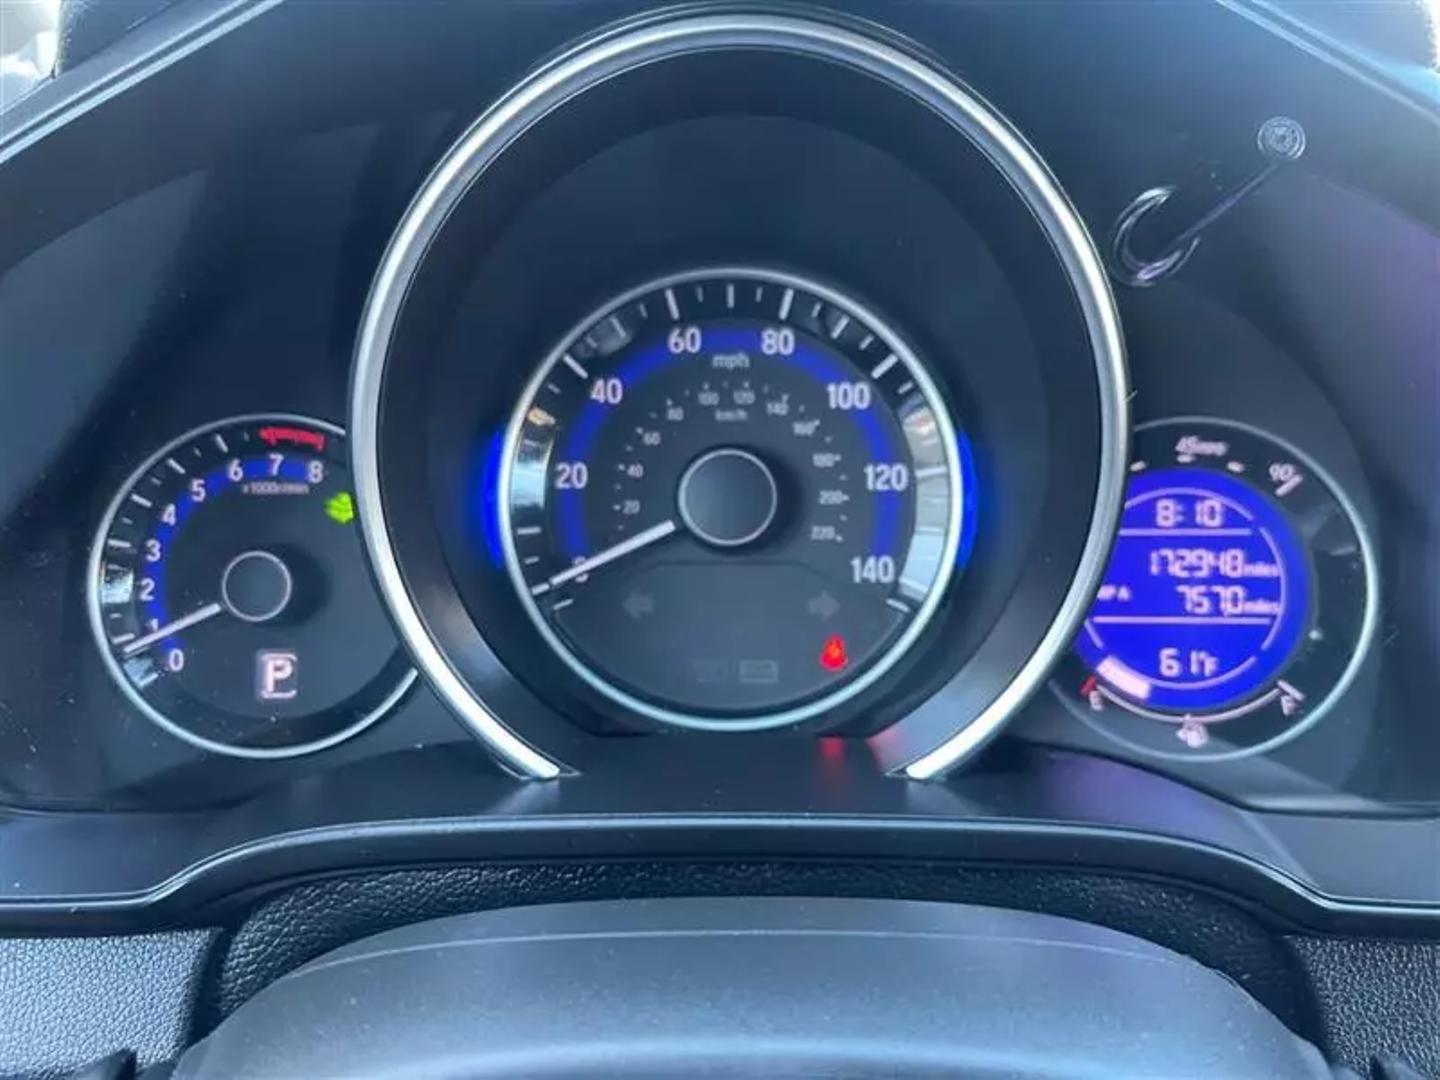 2017 Honda Fit Lx Hatchback 4d - Image 17